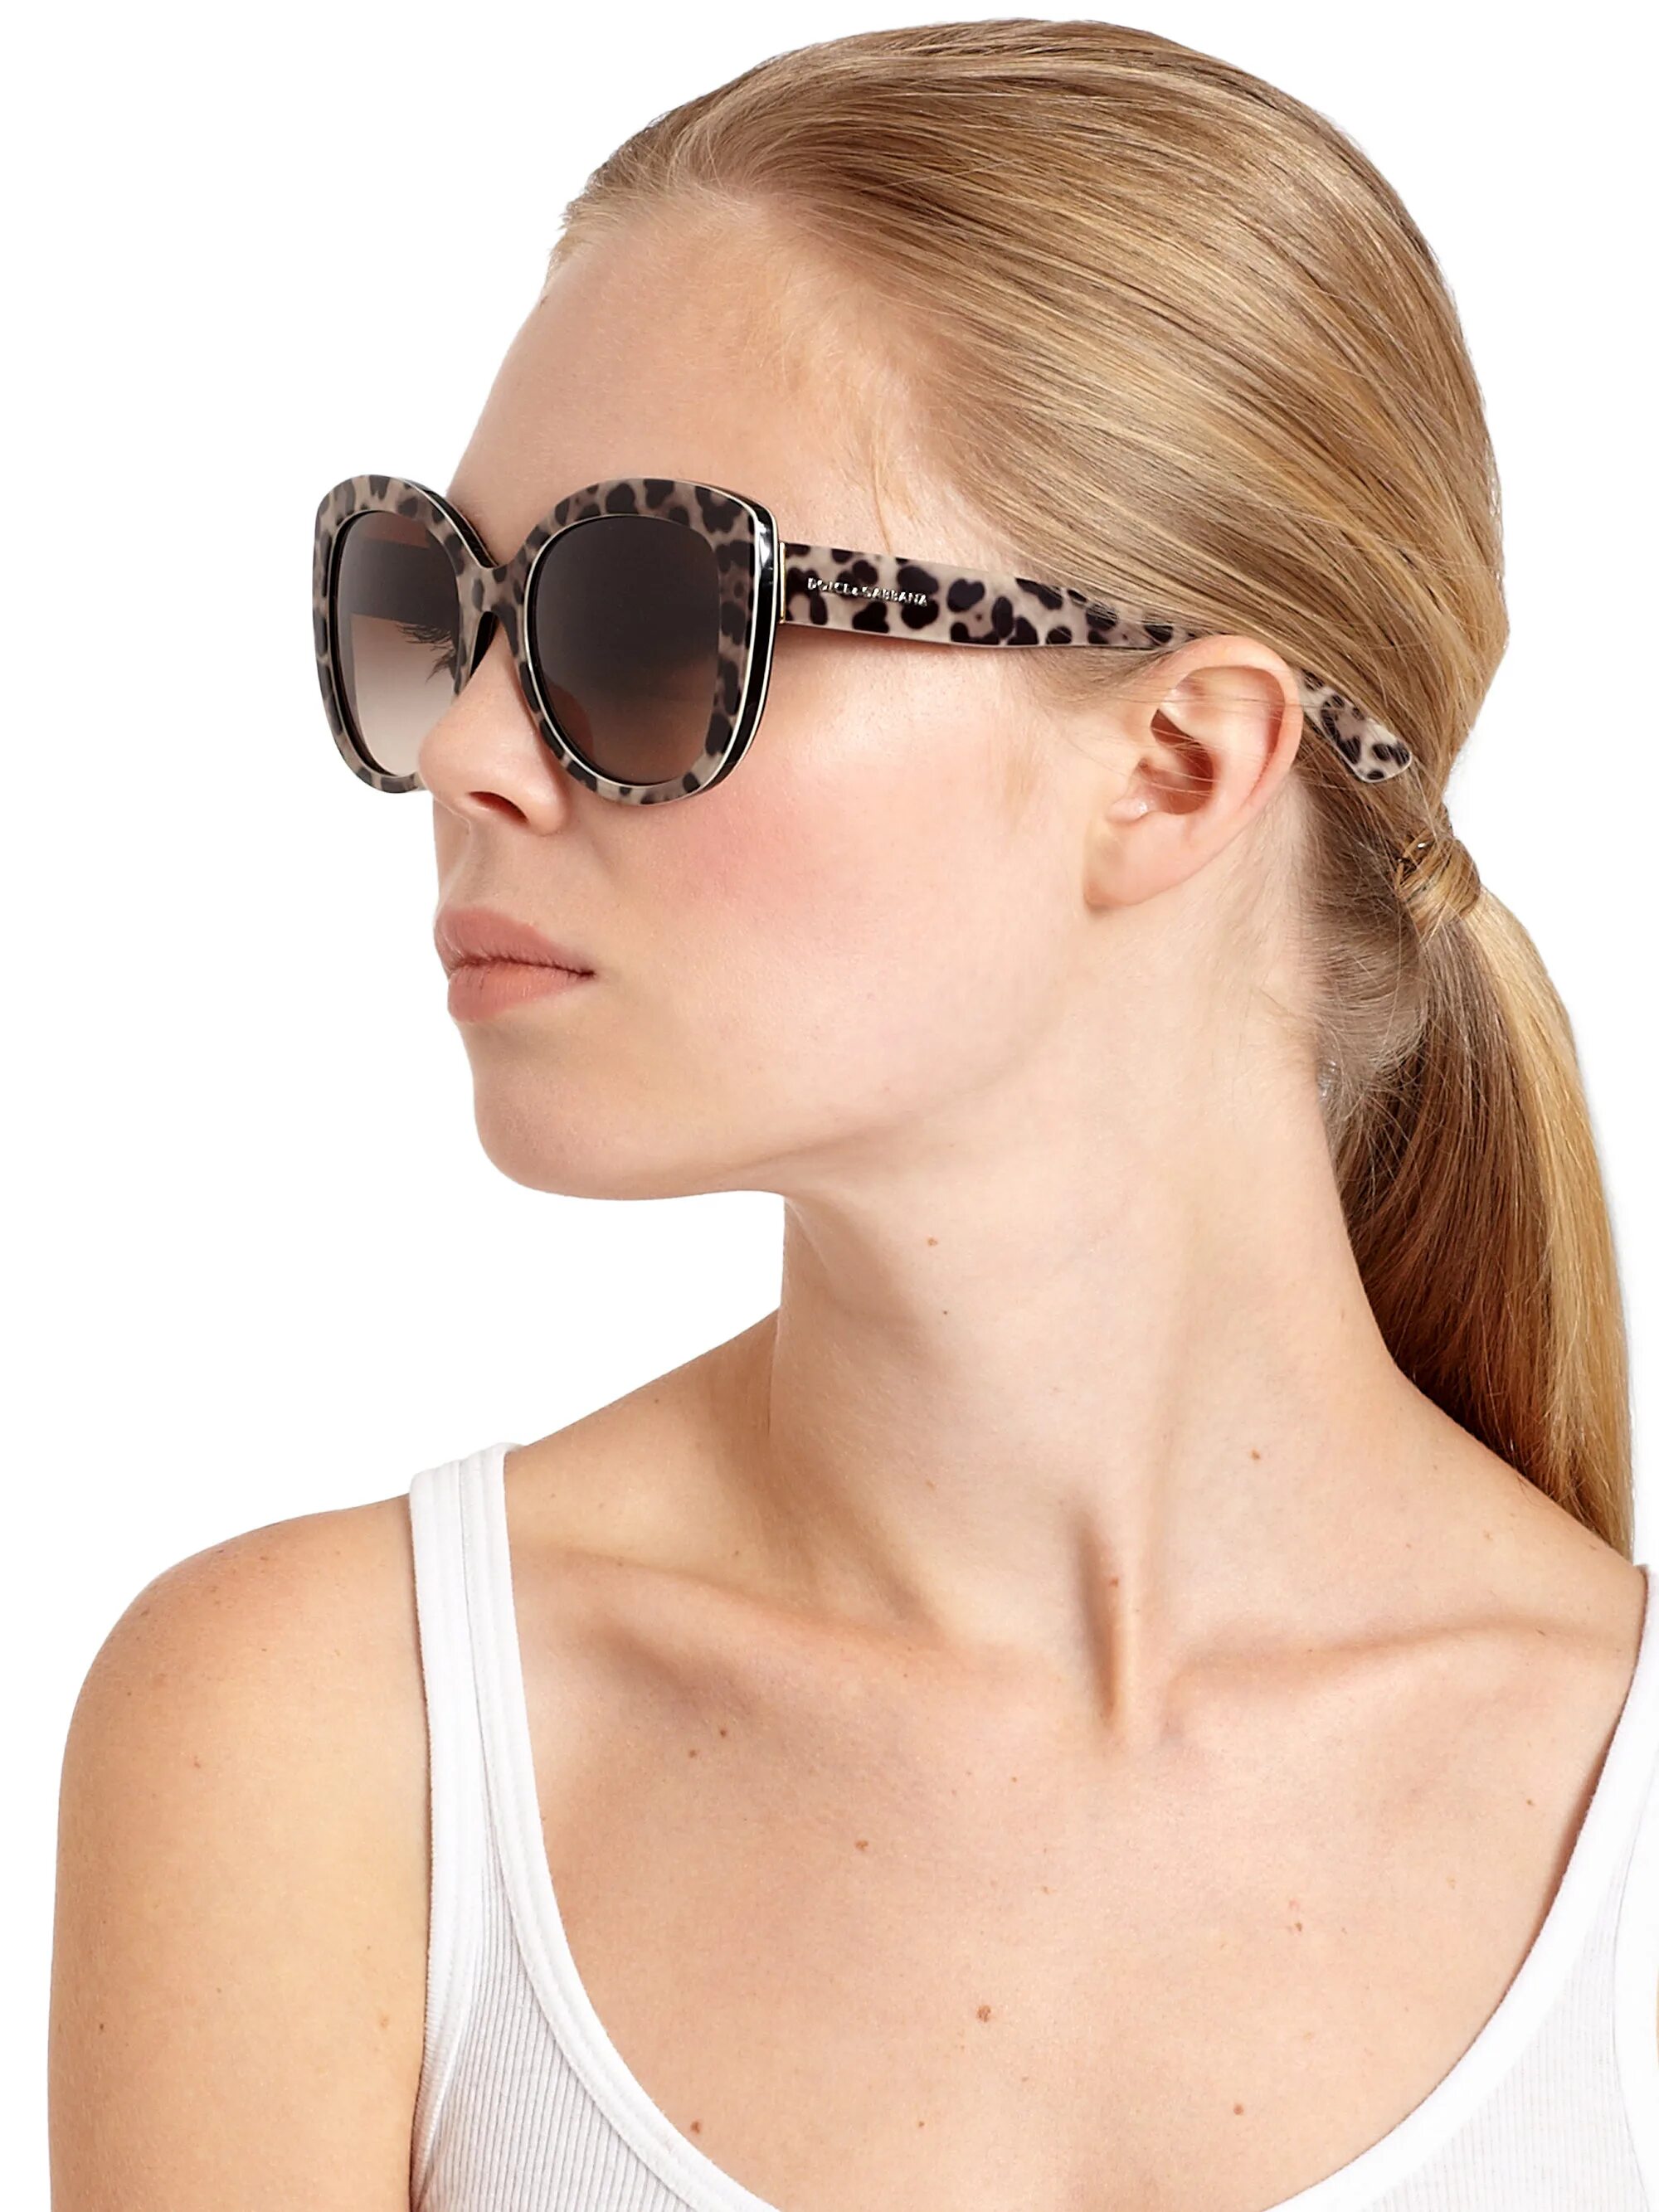 Очки Dolce Gabbana леопард. Очки Дольче Габбана леопардовые. Очки Дольче Габбана леопард. DG 4233 очки солнцезащитные на лице.